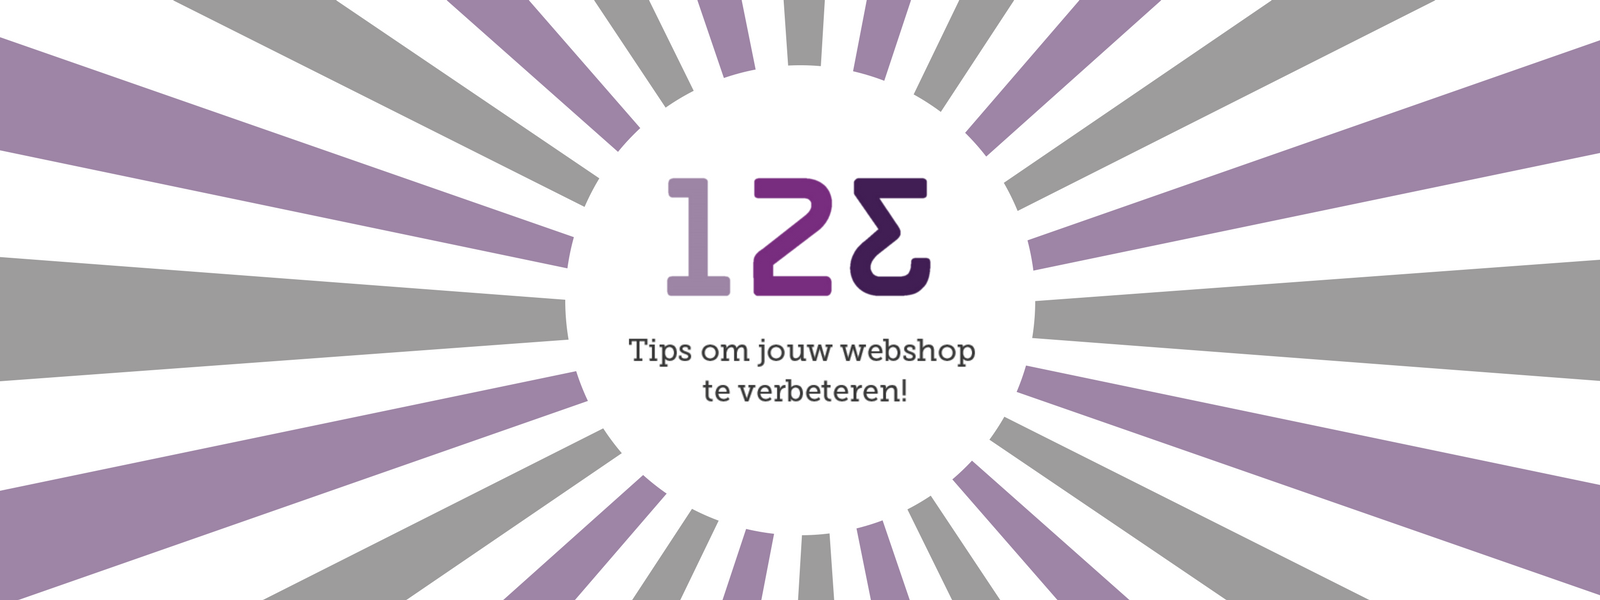 123 Tips om jouw webshop te verbeteren!